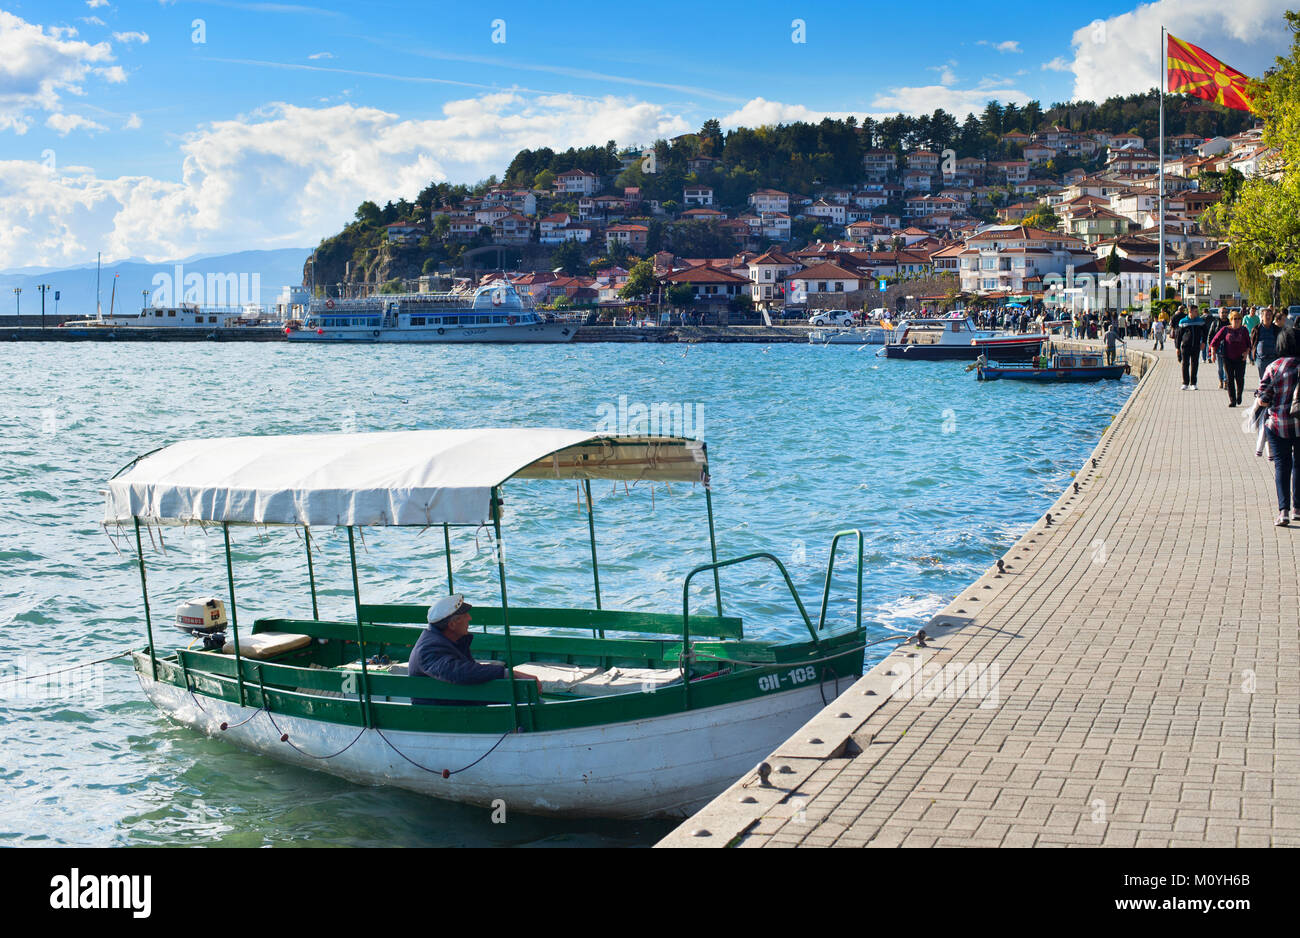 OHRID MACEDONIA - Ott 22, 2016: imbarcazione turistica in attesa per i turisti sul terrapieno di Ohrid. Ohrid è una famosa destinazione turistica della Macedonia. Foto Stock